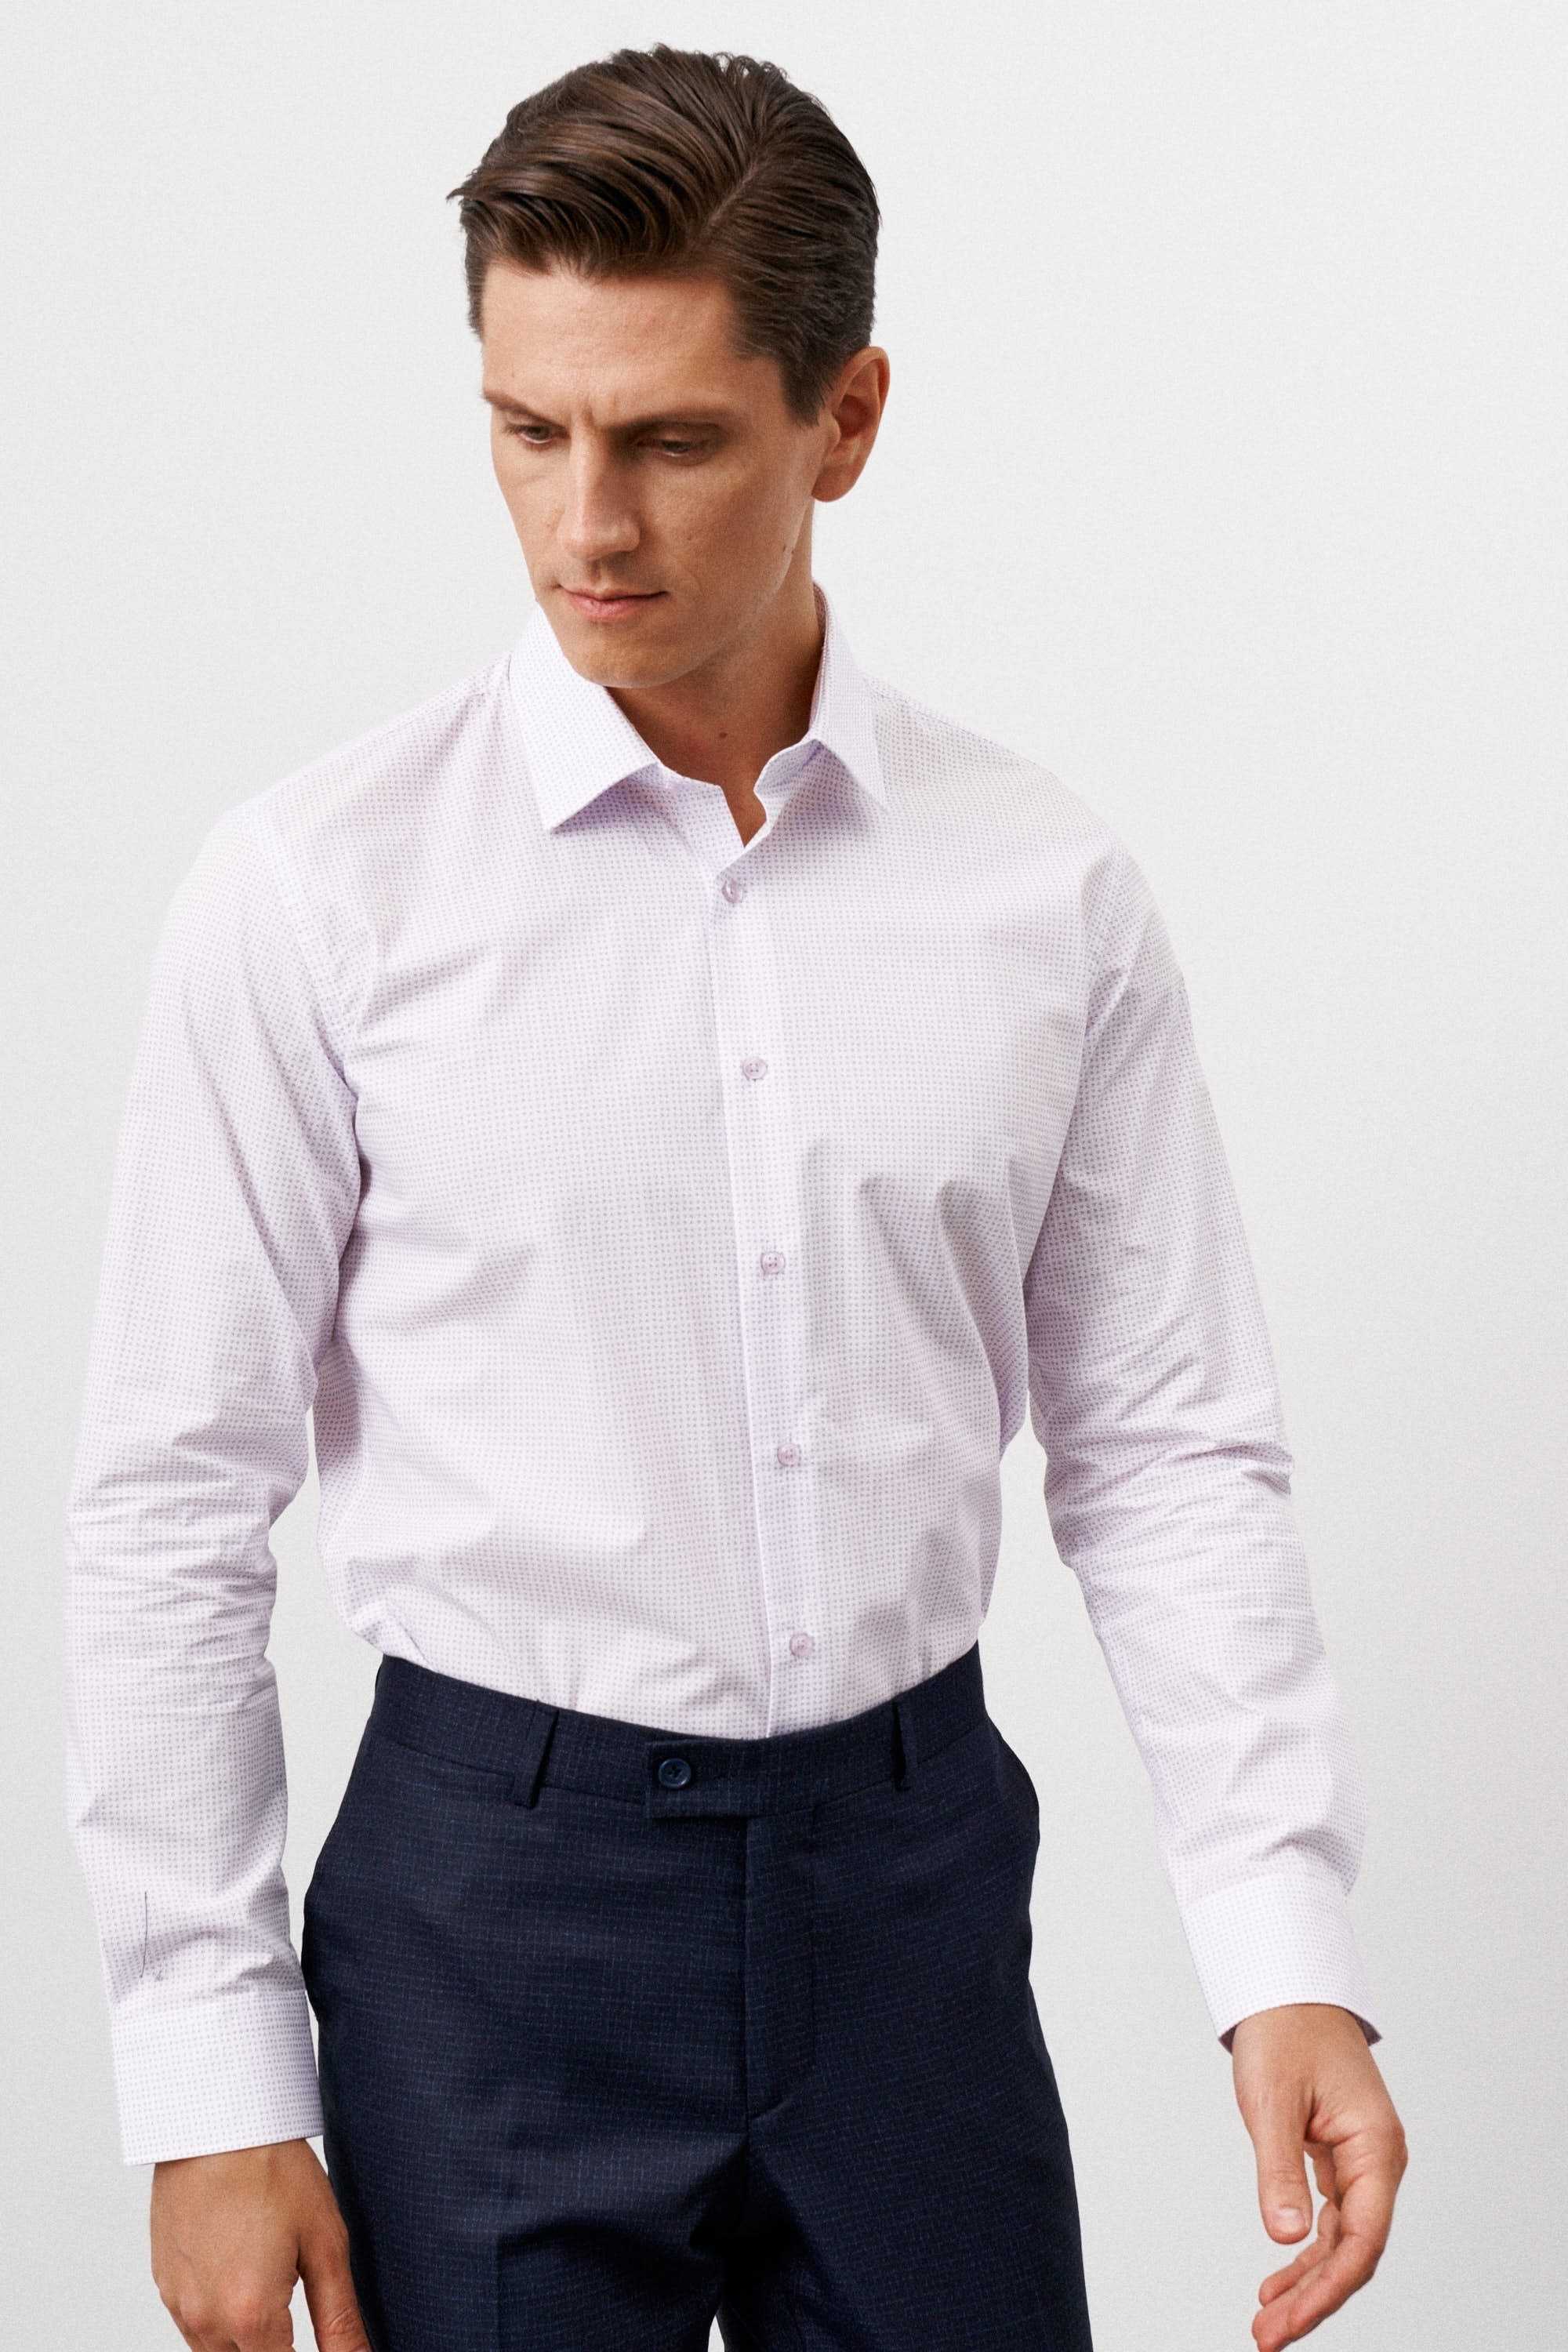 Рубашка мужская бледно-розовая, в мелкий розово-фиолетовый узор, классика воротник